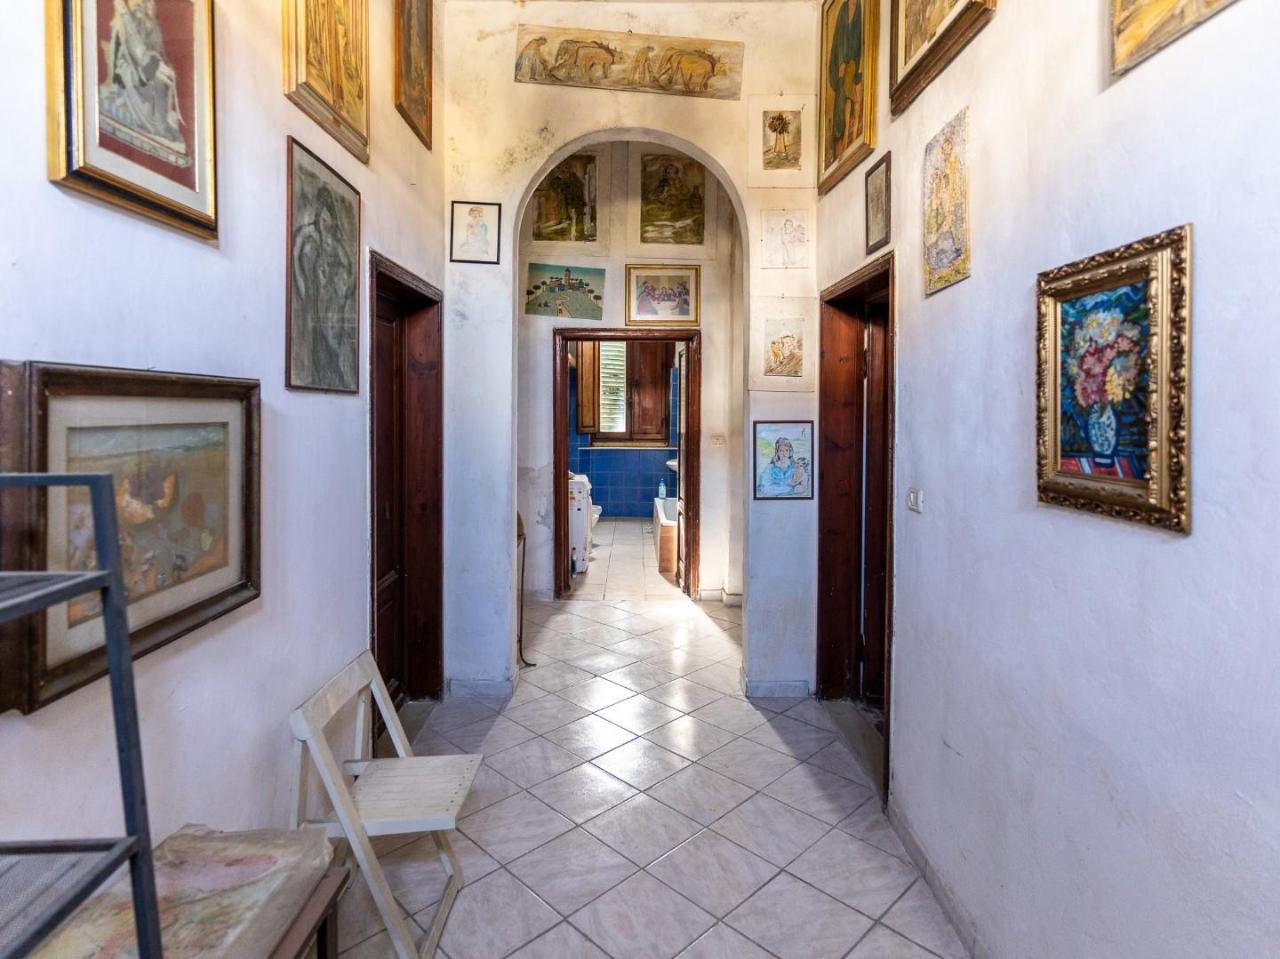 Villa in vendita a Cerreto Guidi